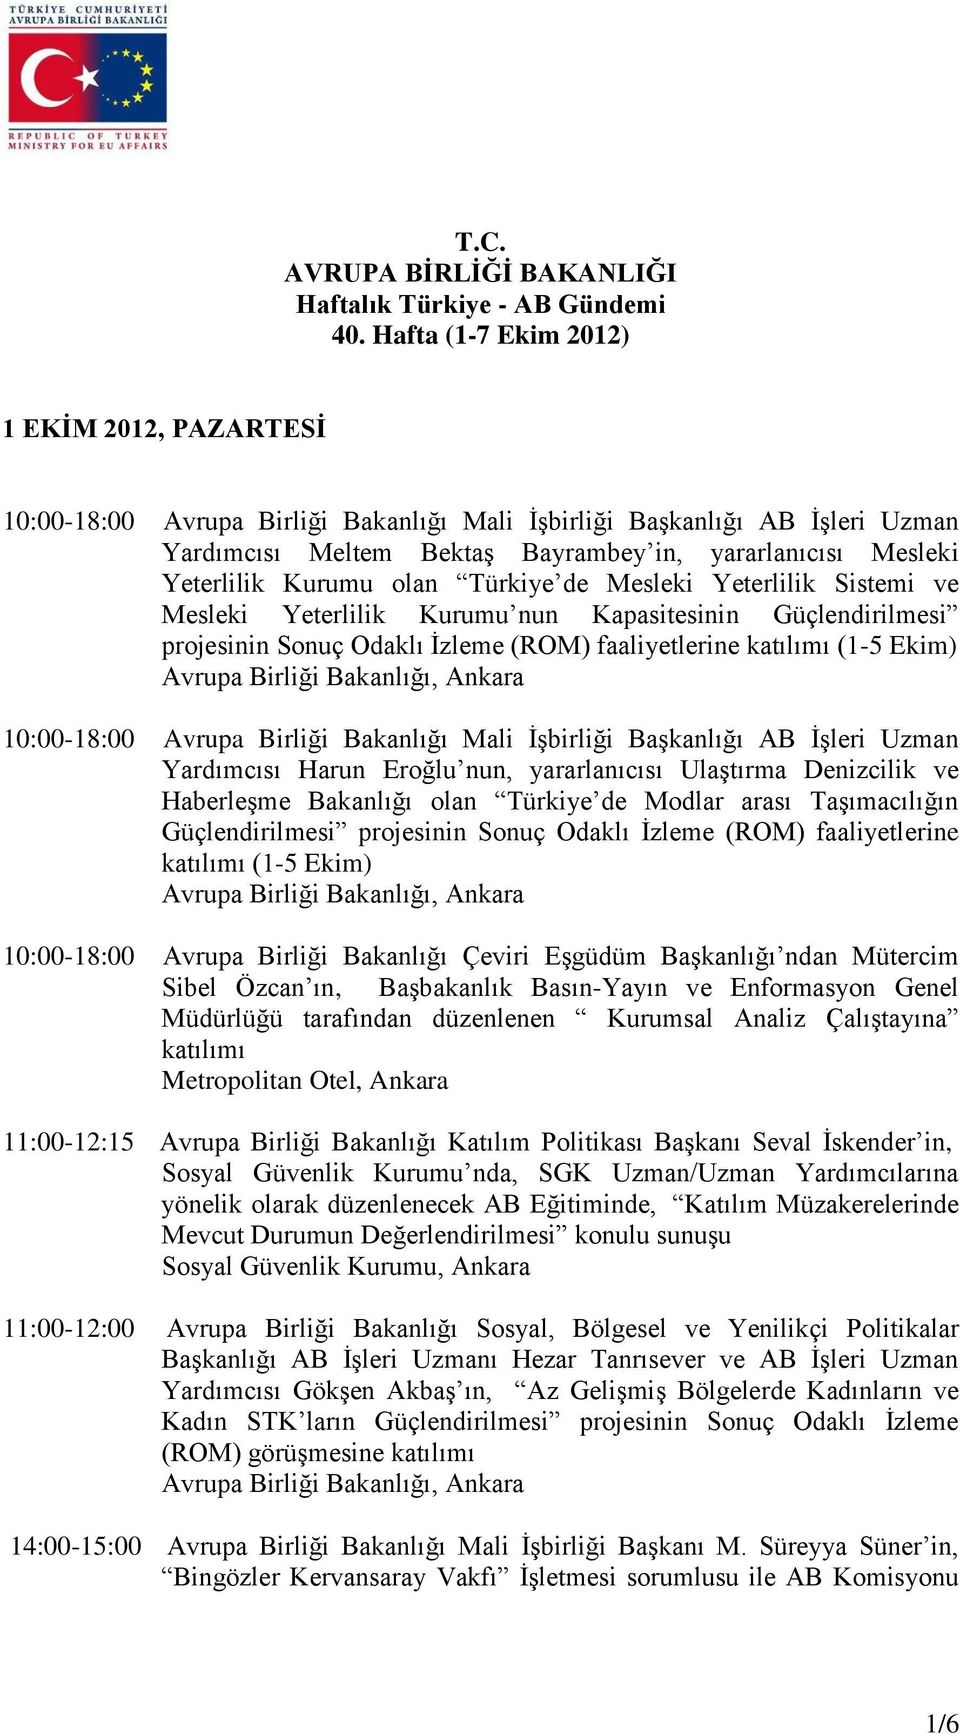 Kurumu olan Türkiye de Mesleki Yeterlilik Sistemi ve Mesleki Yeterlilik Kurumu nun Kapasitesinin Güçlendirilmesi projesinin Sonuç Odaklı İzleme (ROM) faaliyetlerine katılımı (1-5 Ekim) 10:00-18:00